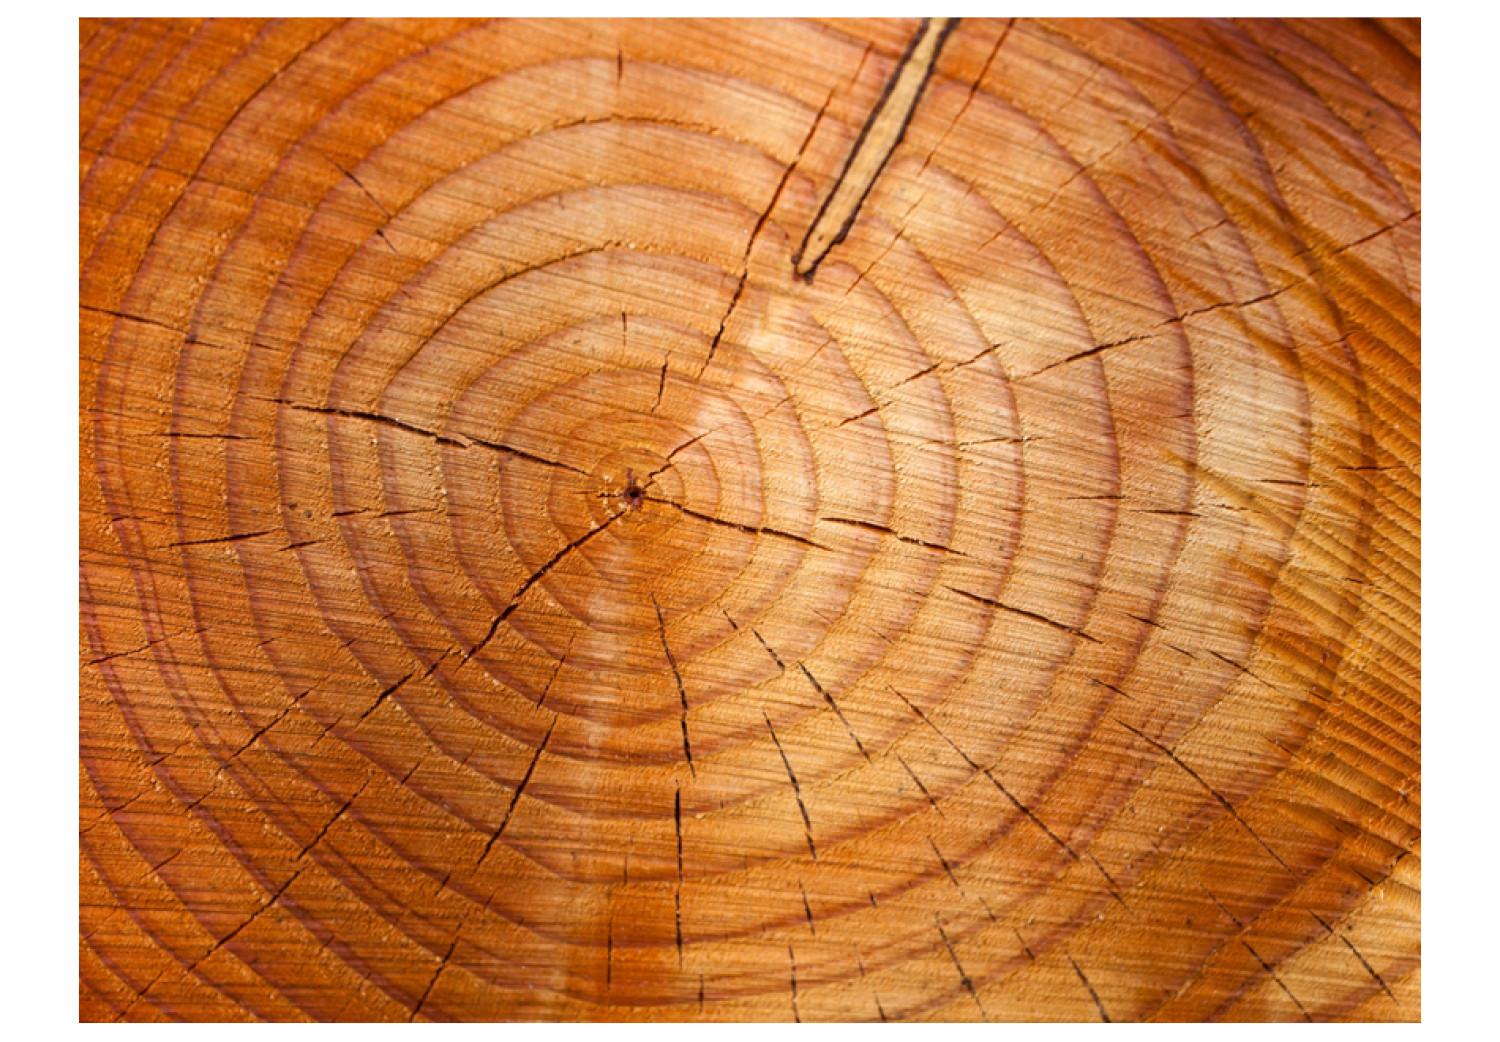 Fotomural Anillos de tronco - patrón de tronco de árbol cortado para leña